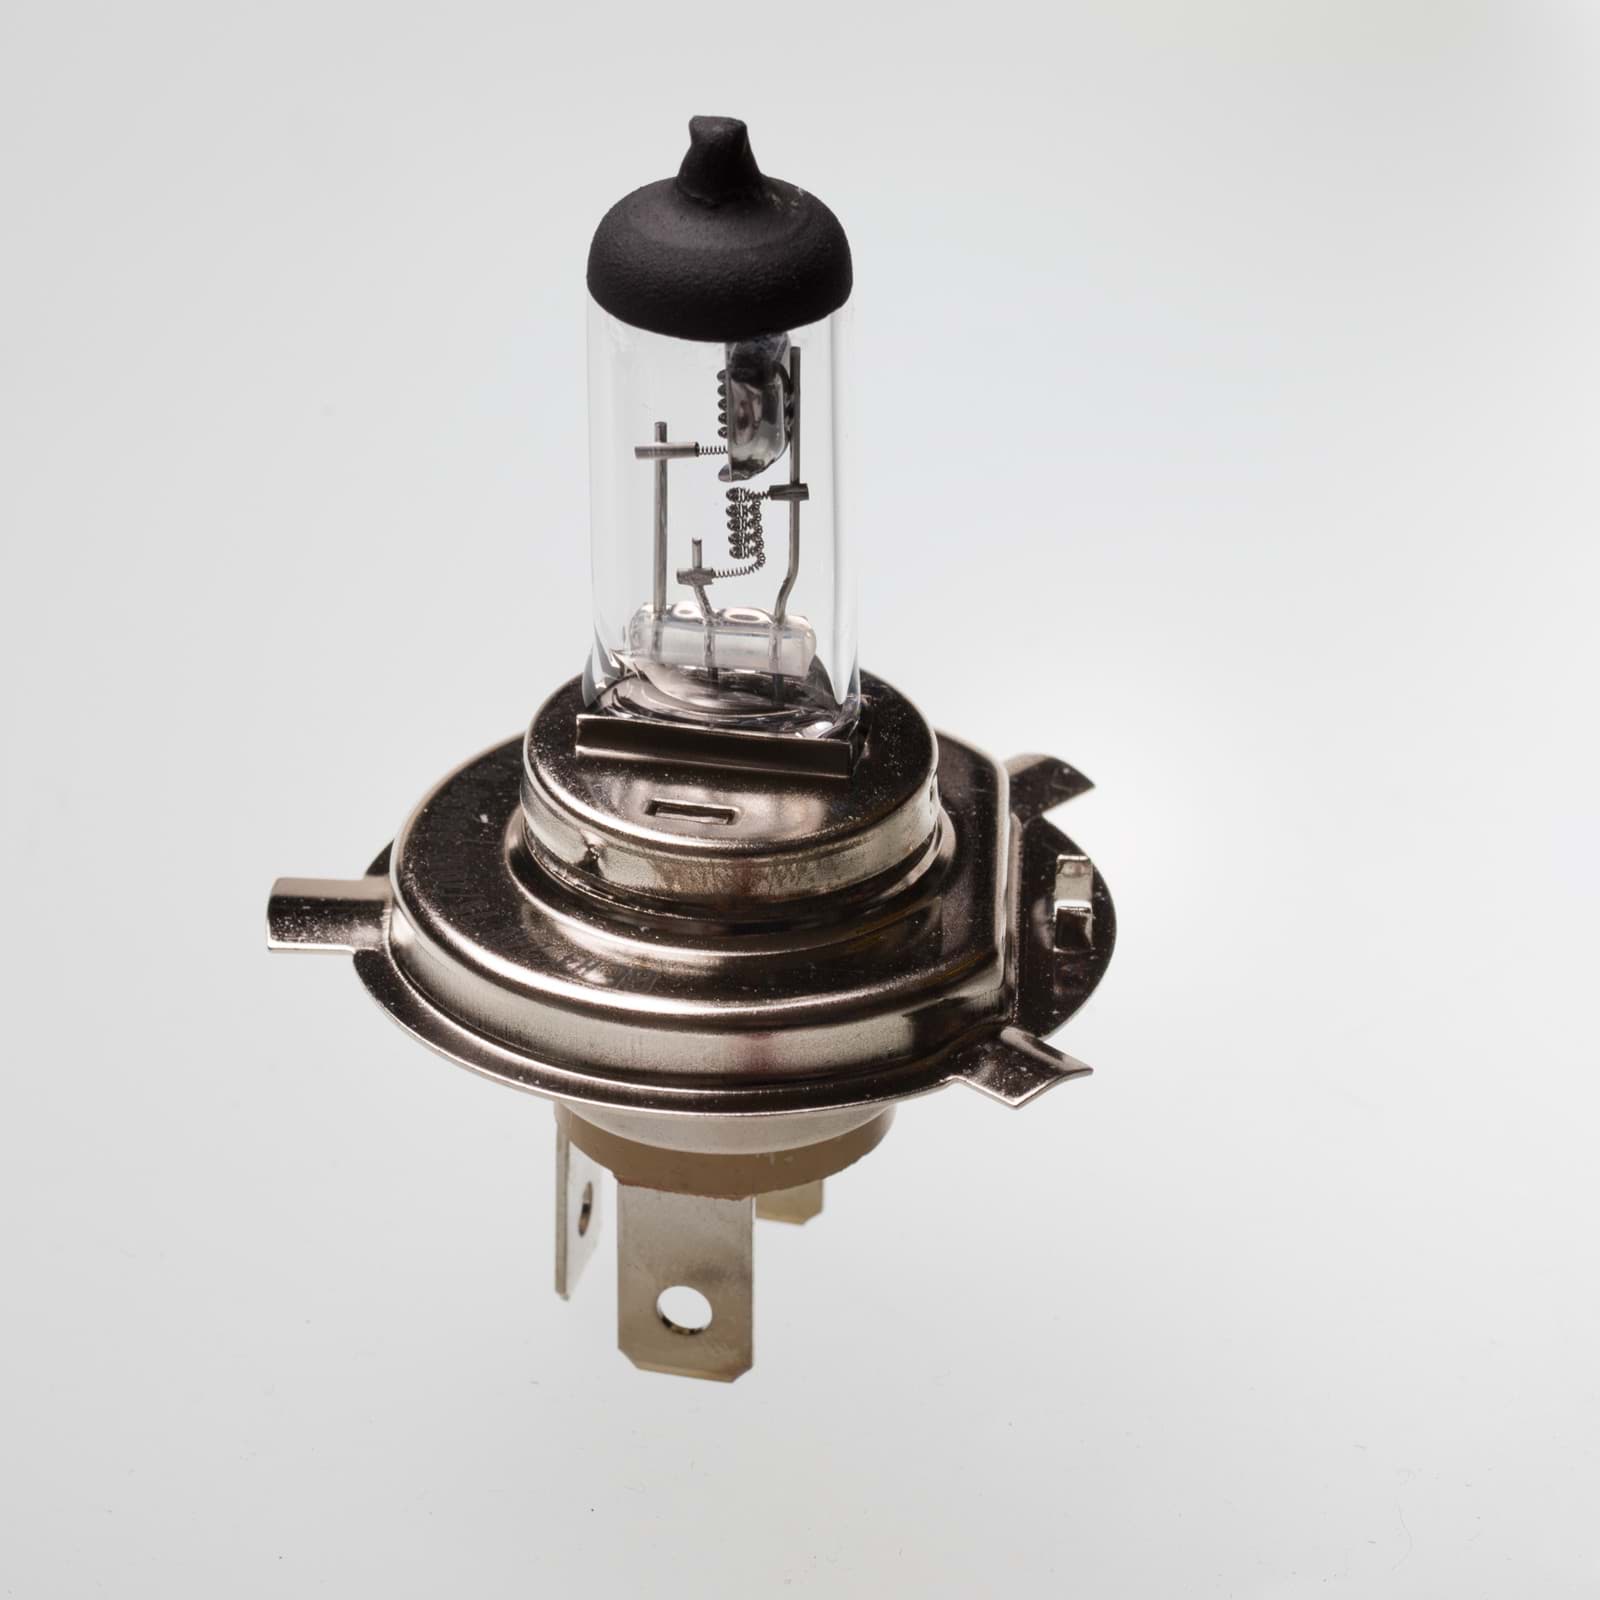 A.PiERiNGER. GE-Lighting H1 Lampe 12V 55 W P14,5s 50310/1 Birne